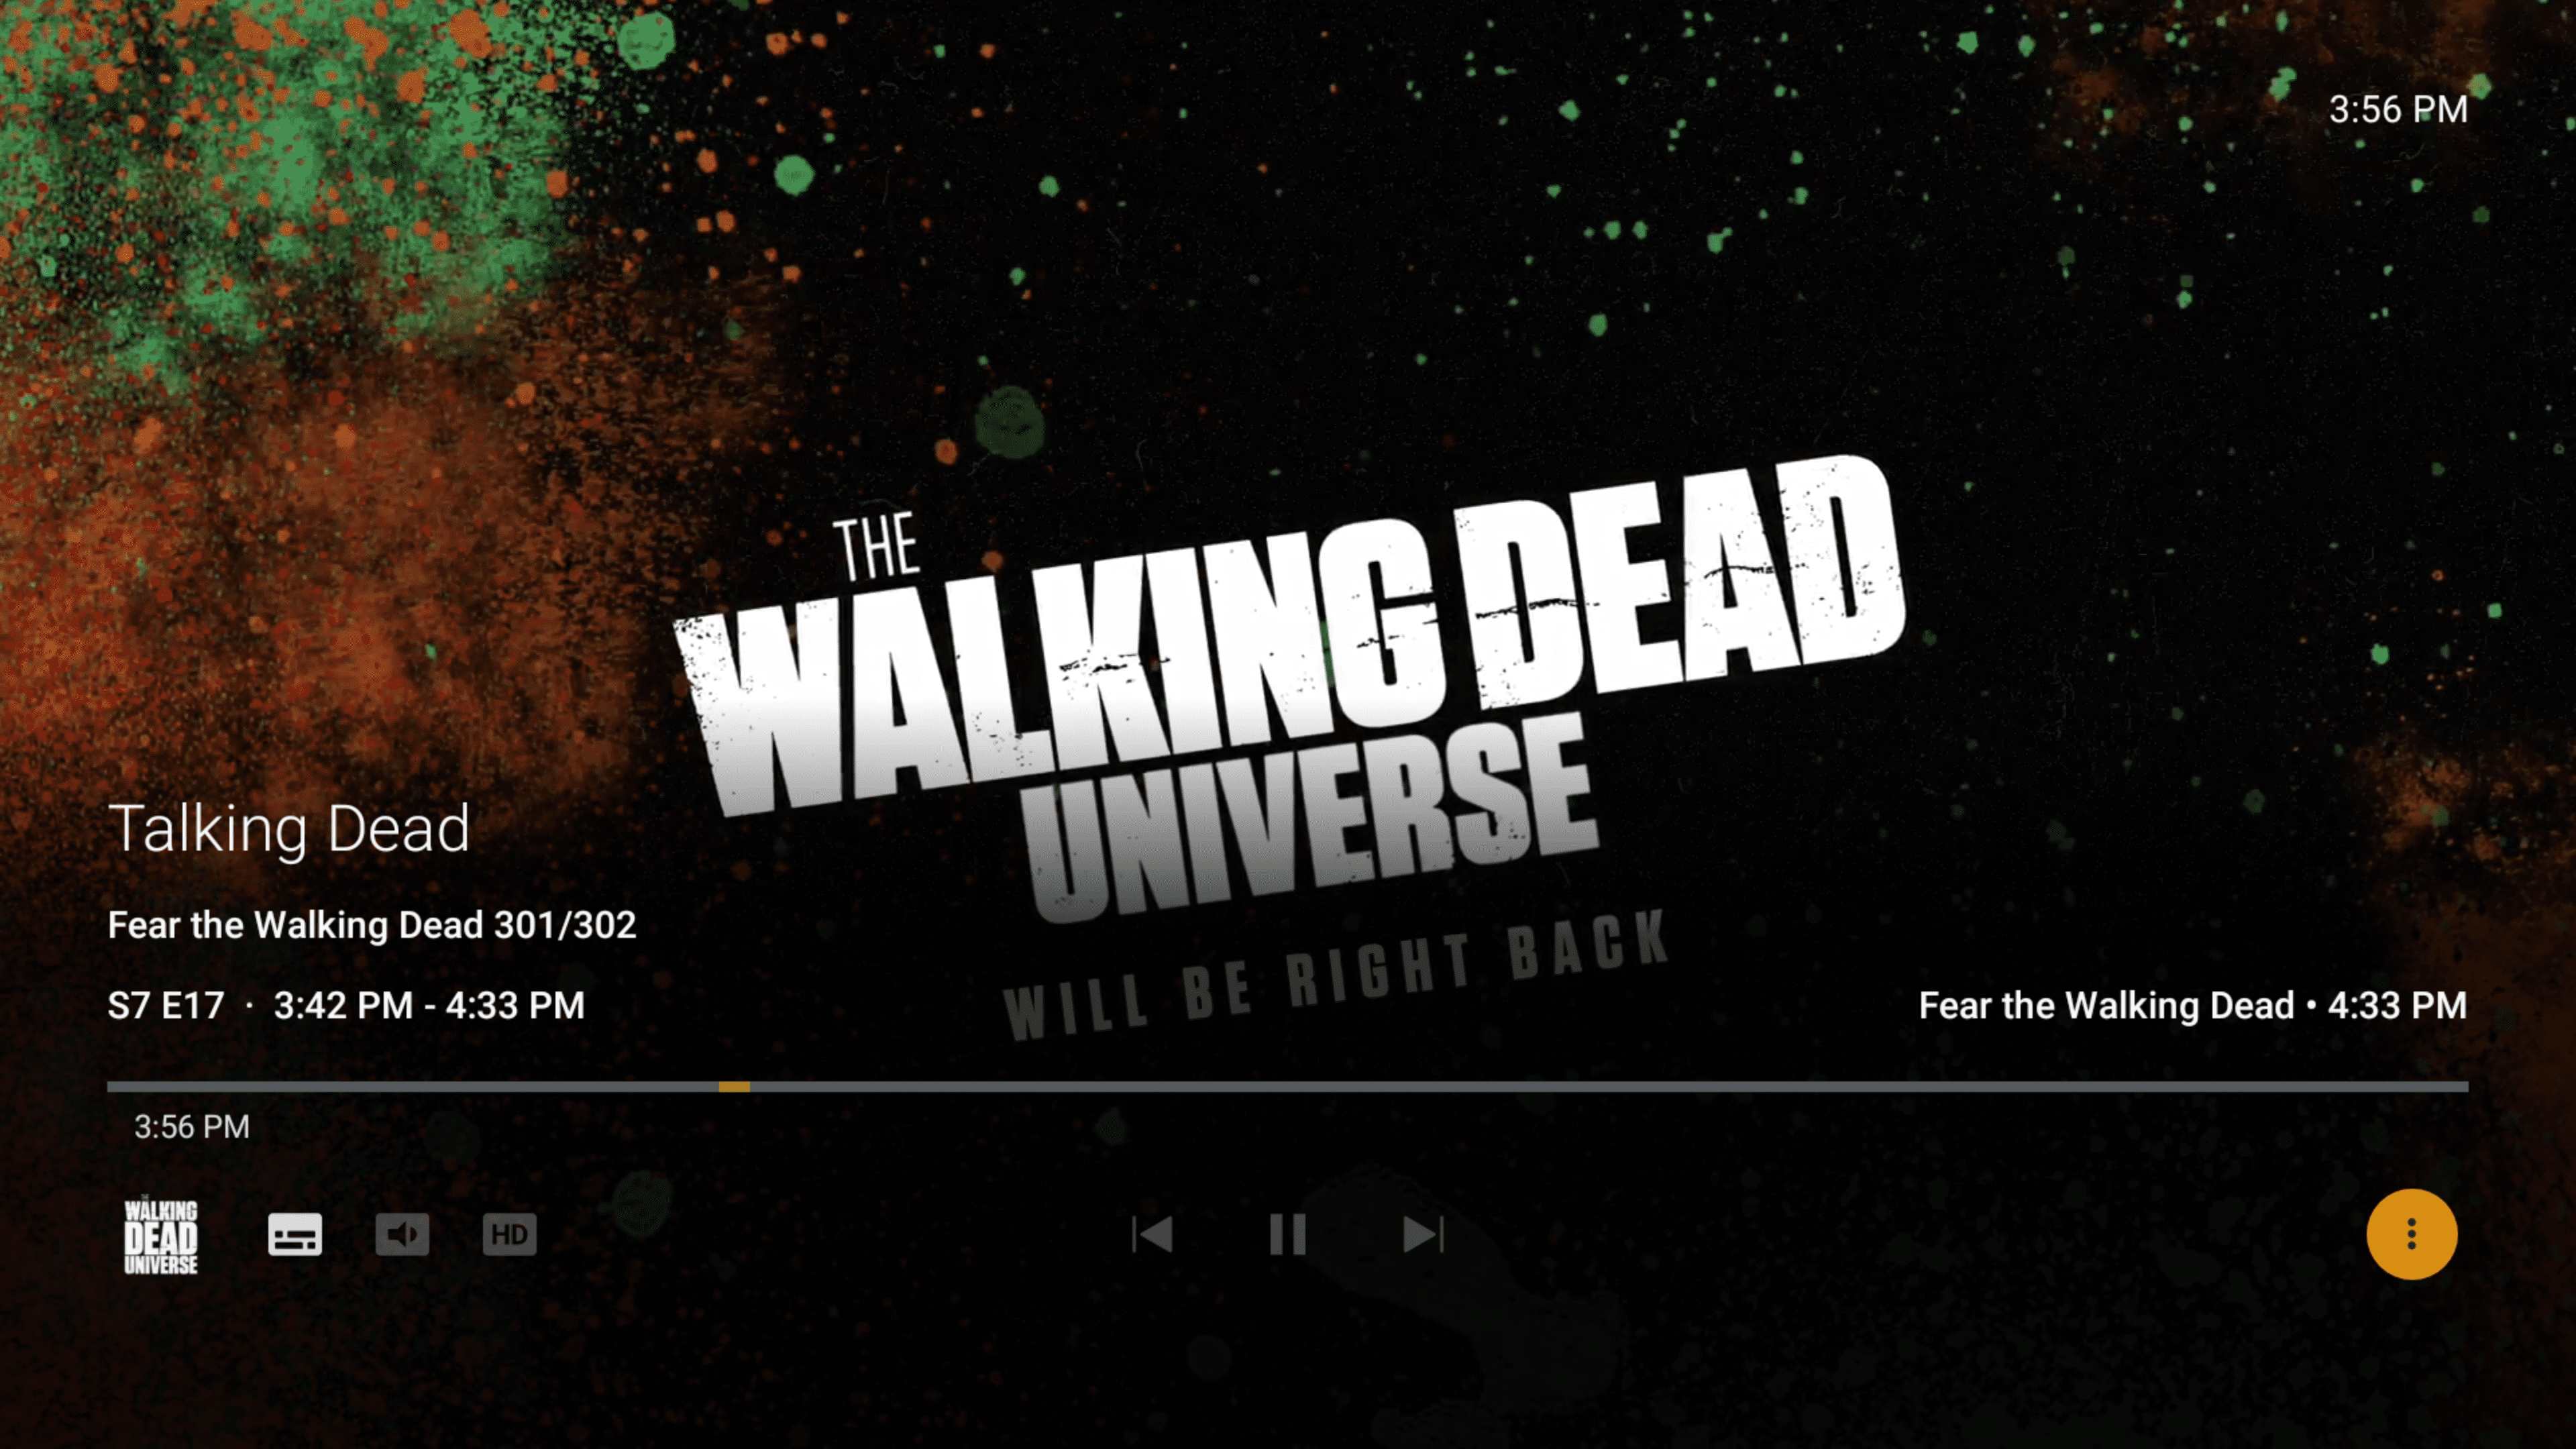 "The Walking Dead Universe" on Plex